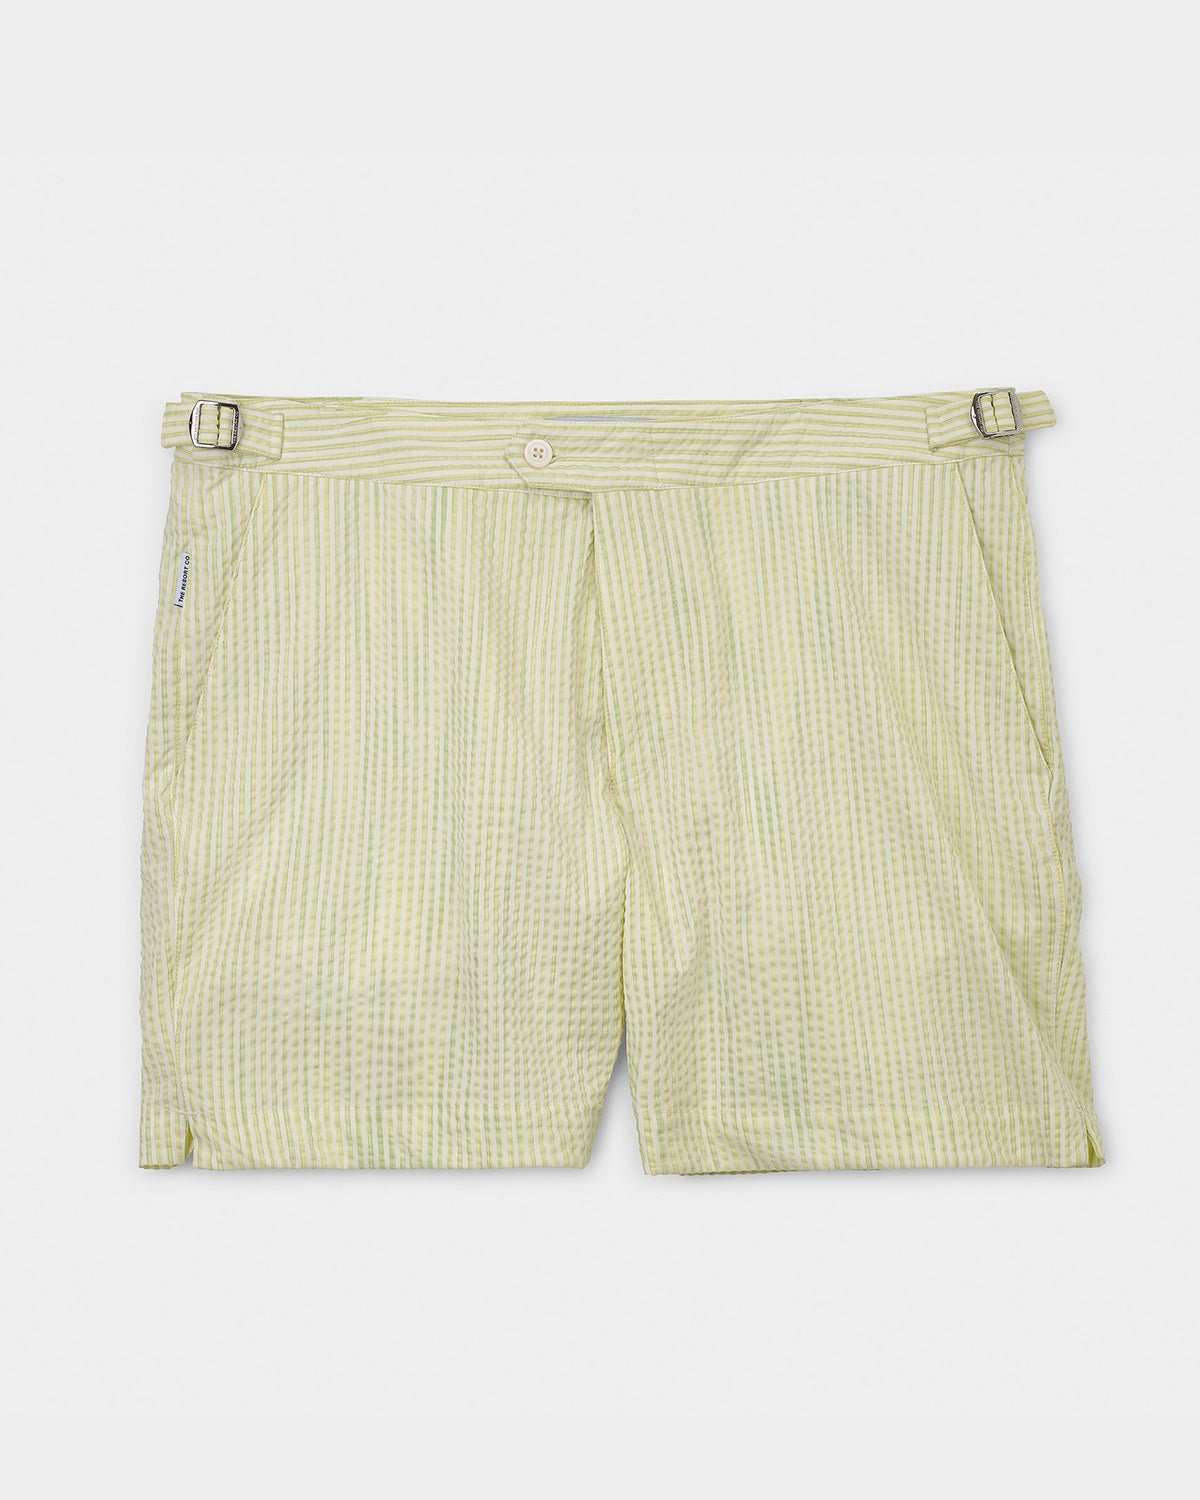 Tailored Swim Shorts Yellow Stripe Seersucker - THE RESORT CO